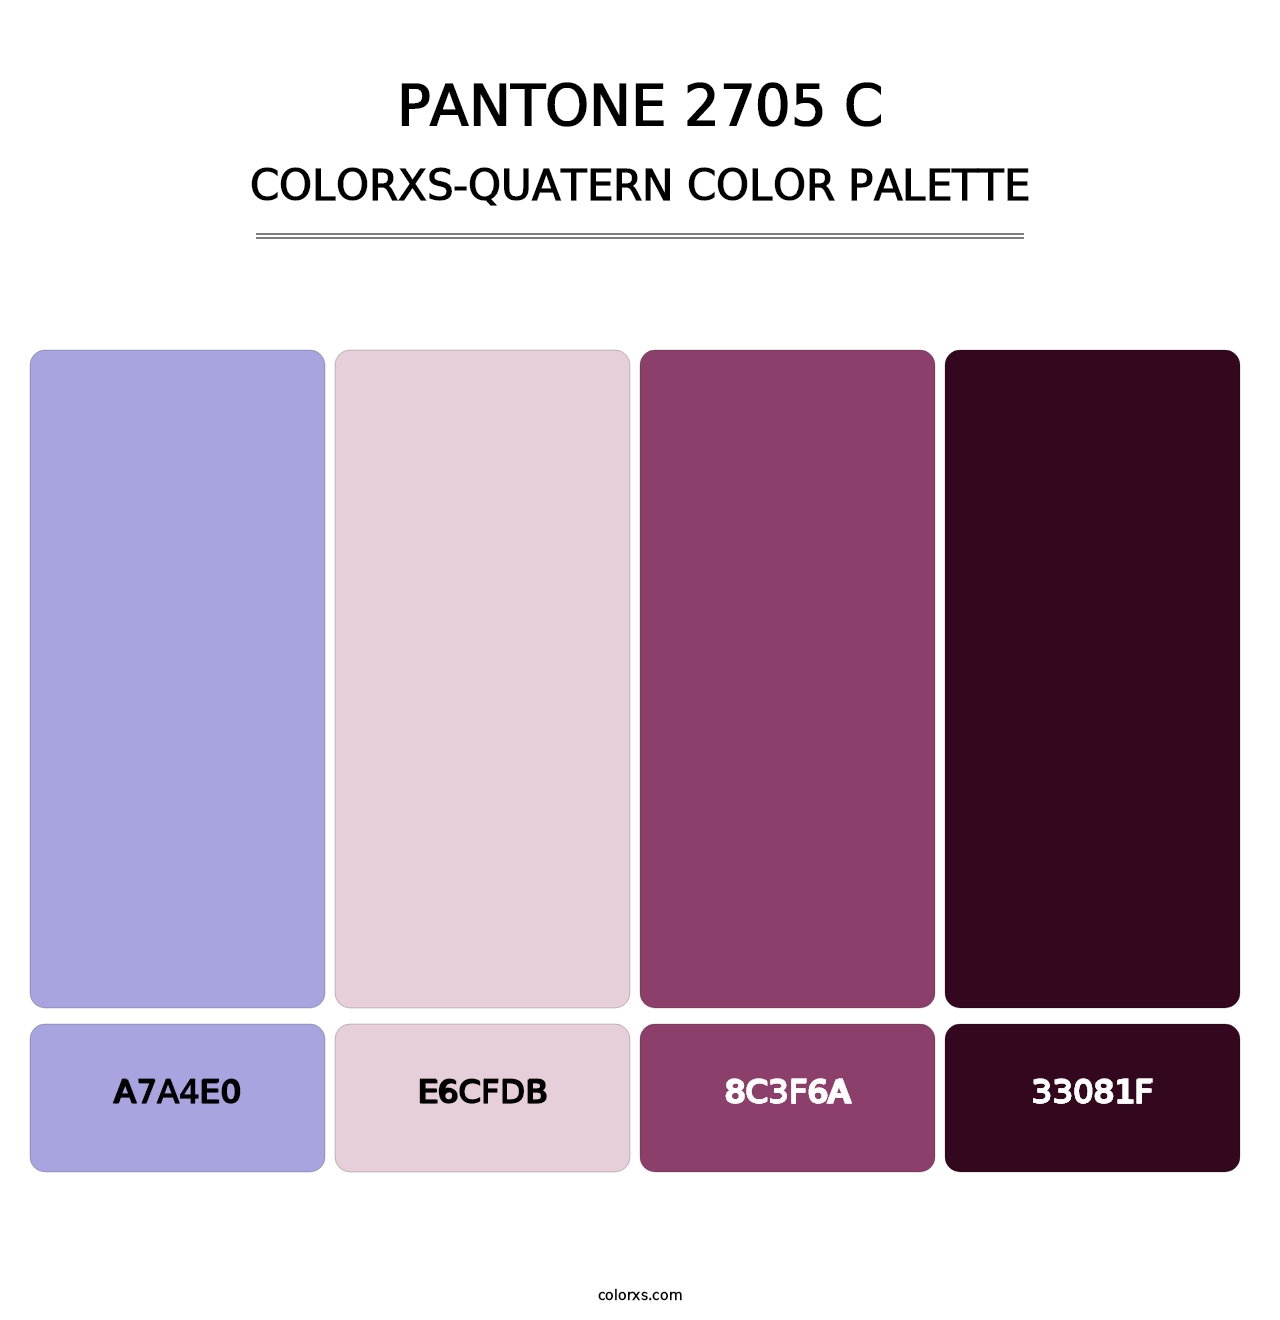 PANTONE 2705 C - Colorxs Quatern Palette